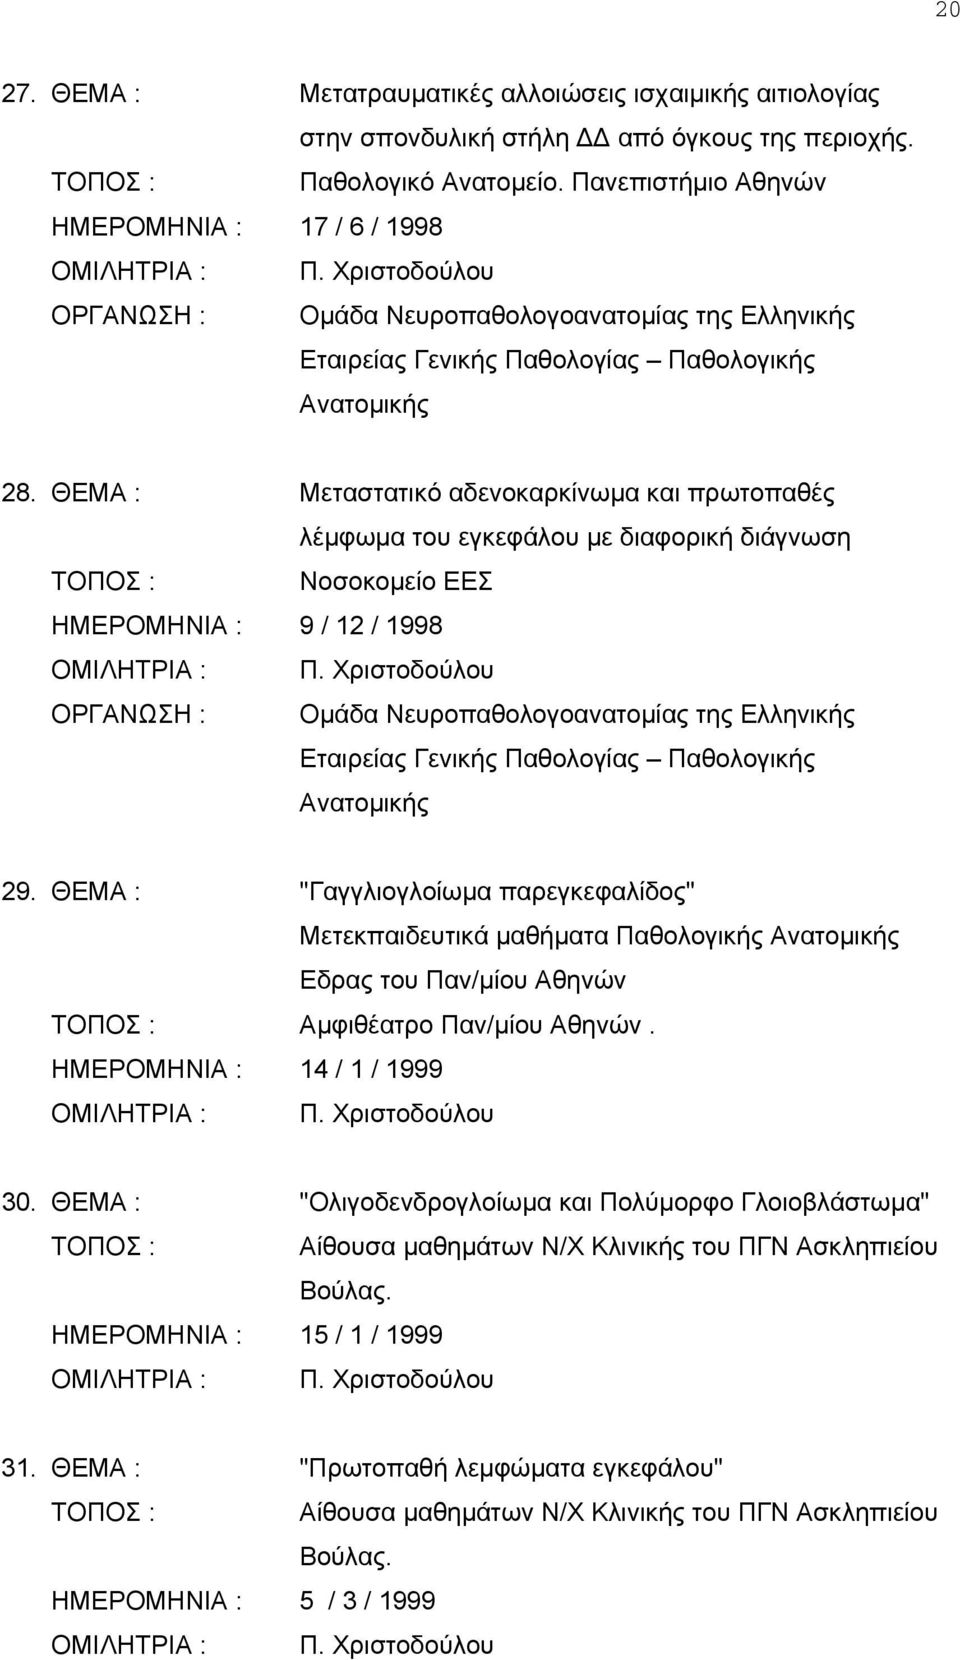 ΘΕΜΑ : Μεταστατικό αδενοκαρκίνωμα και πρωτοπαθές λέμφωμα του εγκεφάλου με διαφορική διάγνωση Νοσοκομείο ΕΕΣ ΗΜΕΡΟΜΗΝΙΑ : 9 / 12 / 1998 ΟΡΓΑΝΩΣΗ : Ομάδα Νευροπαθολογοανατομίας της Ελληνικής Εταιρείας